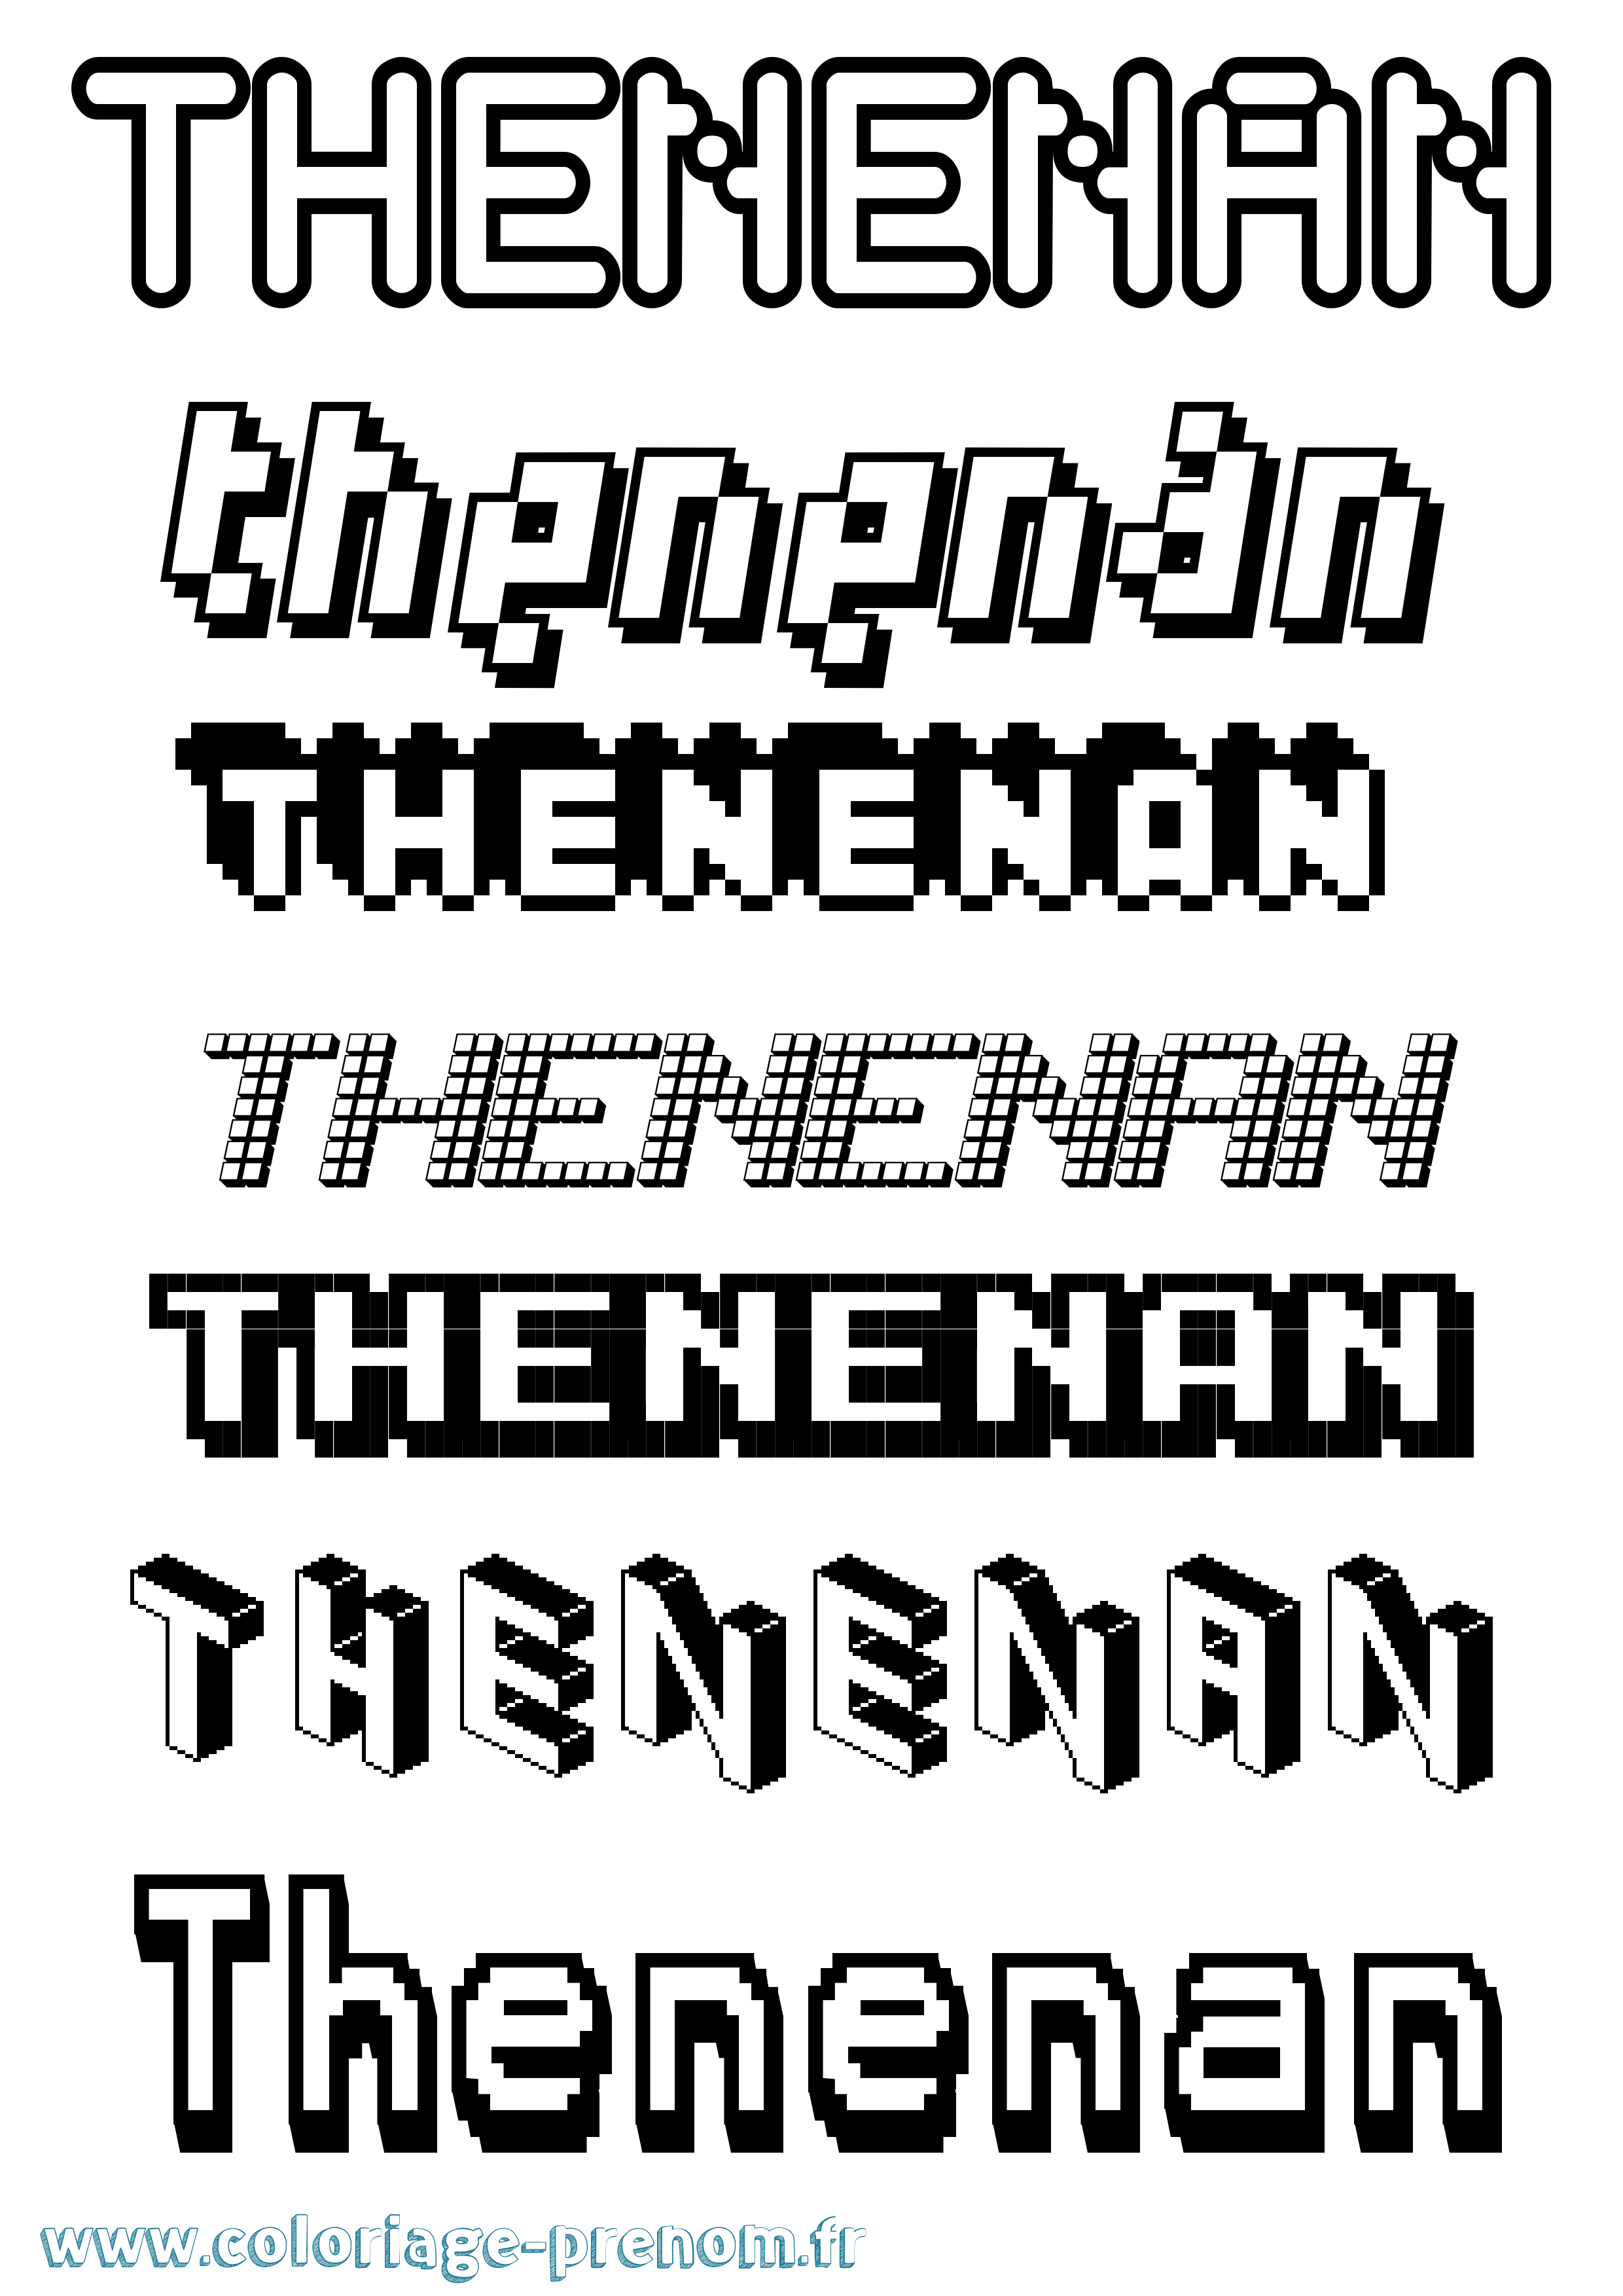 Coloriage prénom Thenenan Pixel